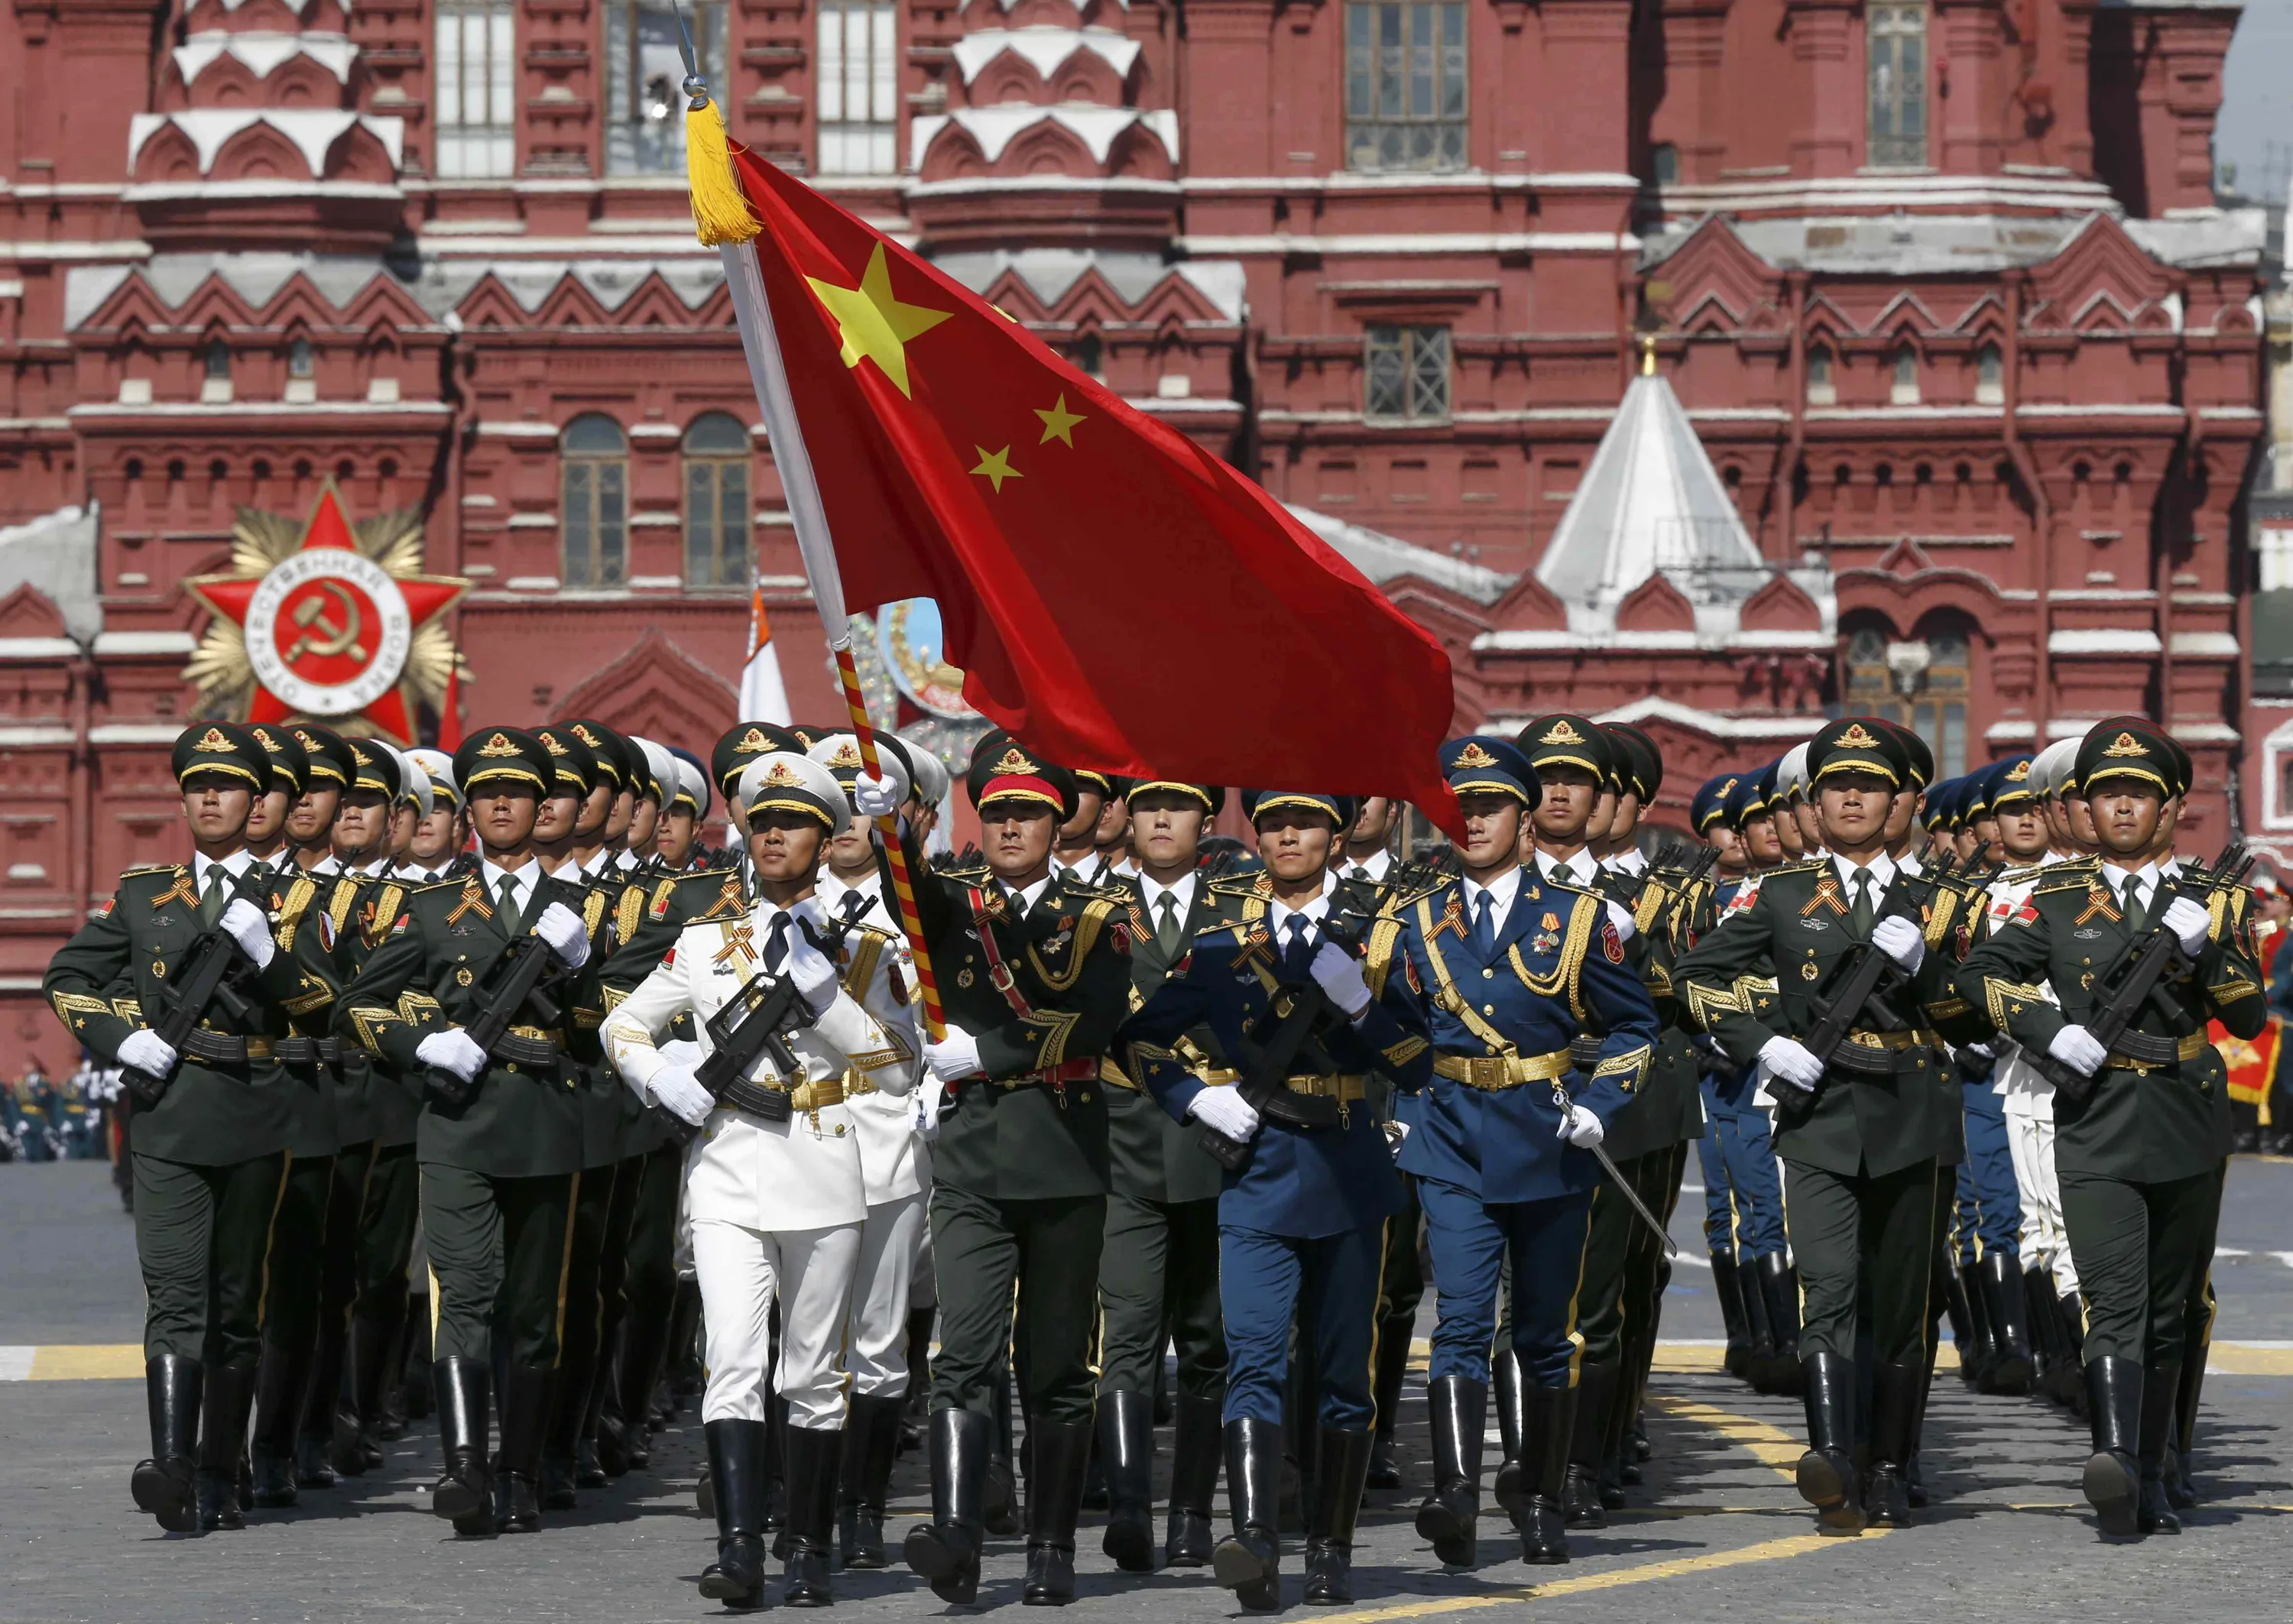 9 мая 2015 год. 70 Лет Победы парад на красной площади. Марширующие солдаты на красной площади 9 мая. Солдаты красной армии на красной площади. Китайские солдаты на параде Победы в Москве.